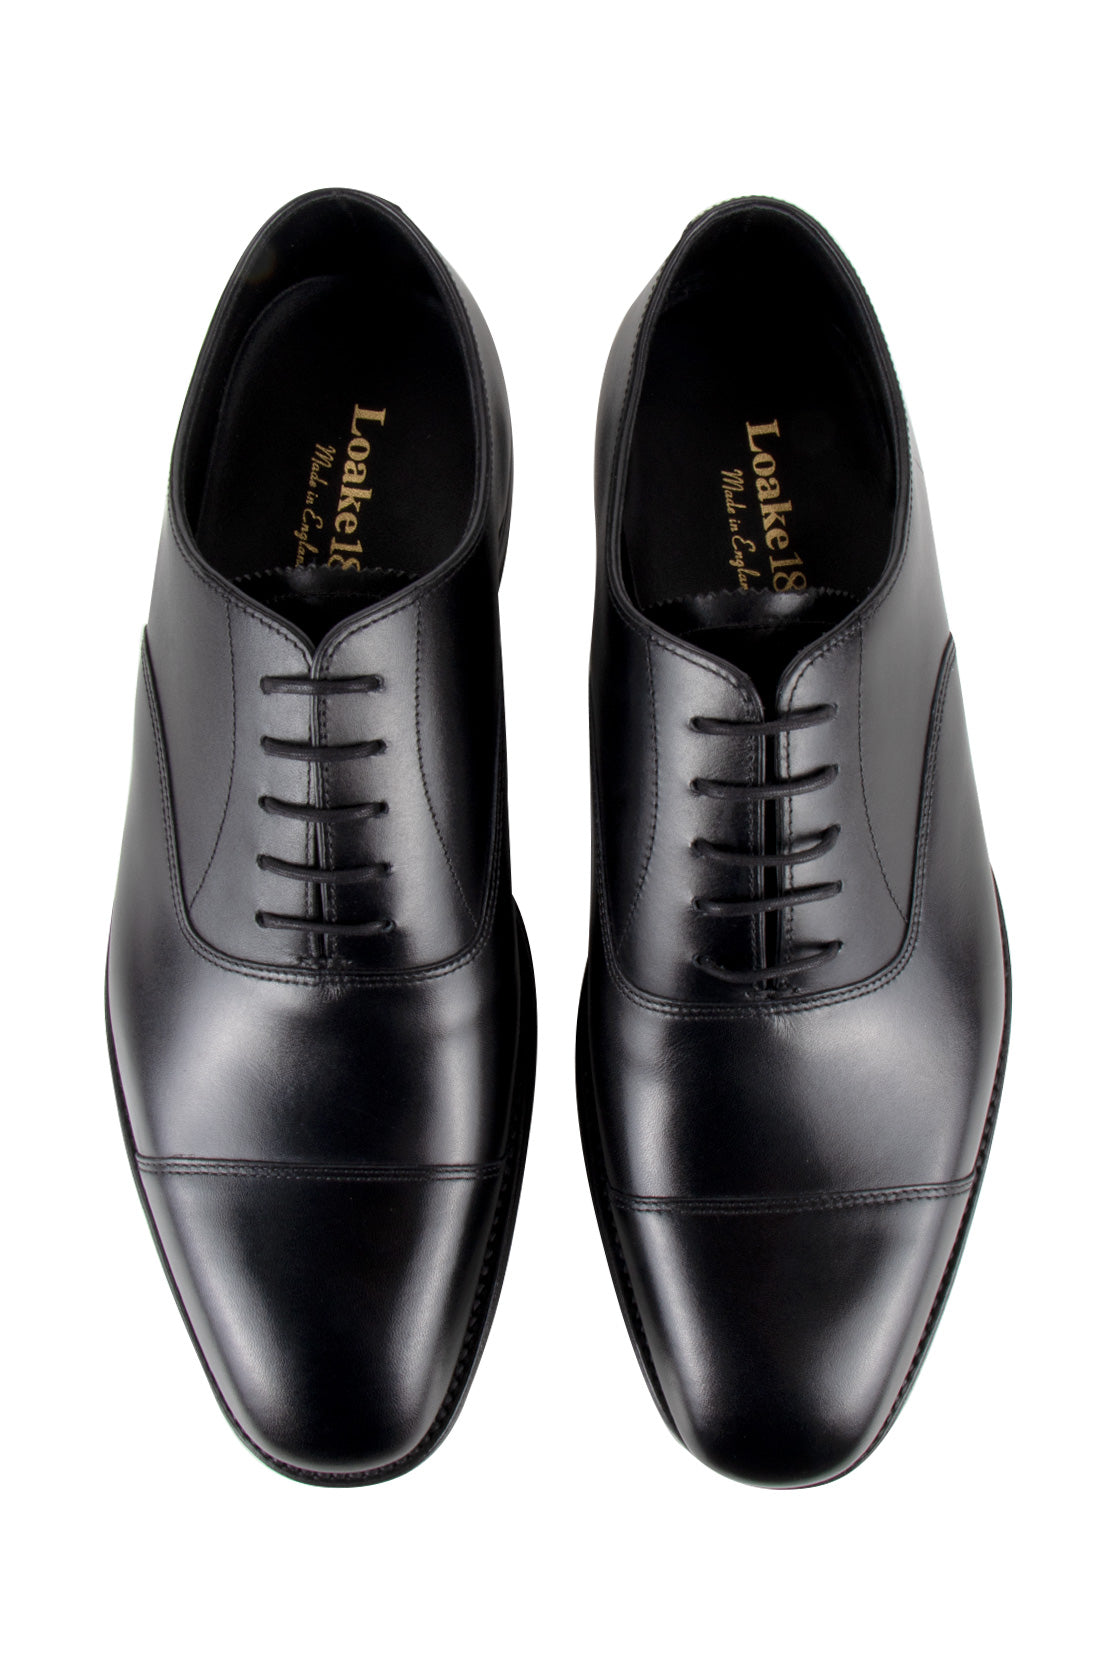 Loake Aldwych Rubber Sole Oxford Shoe Black